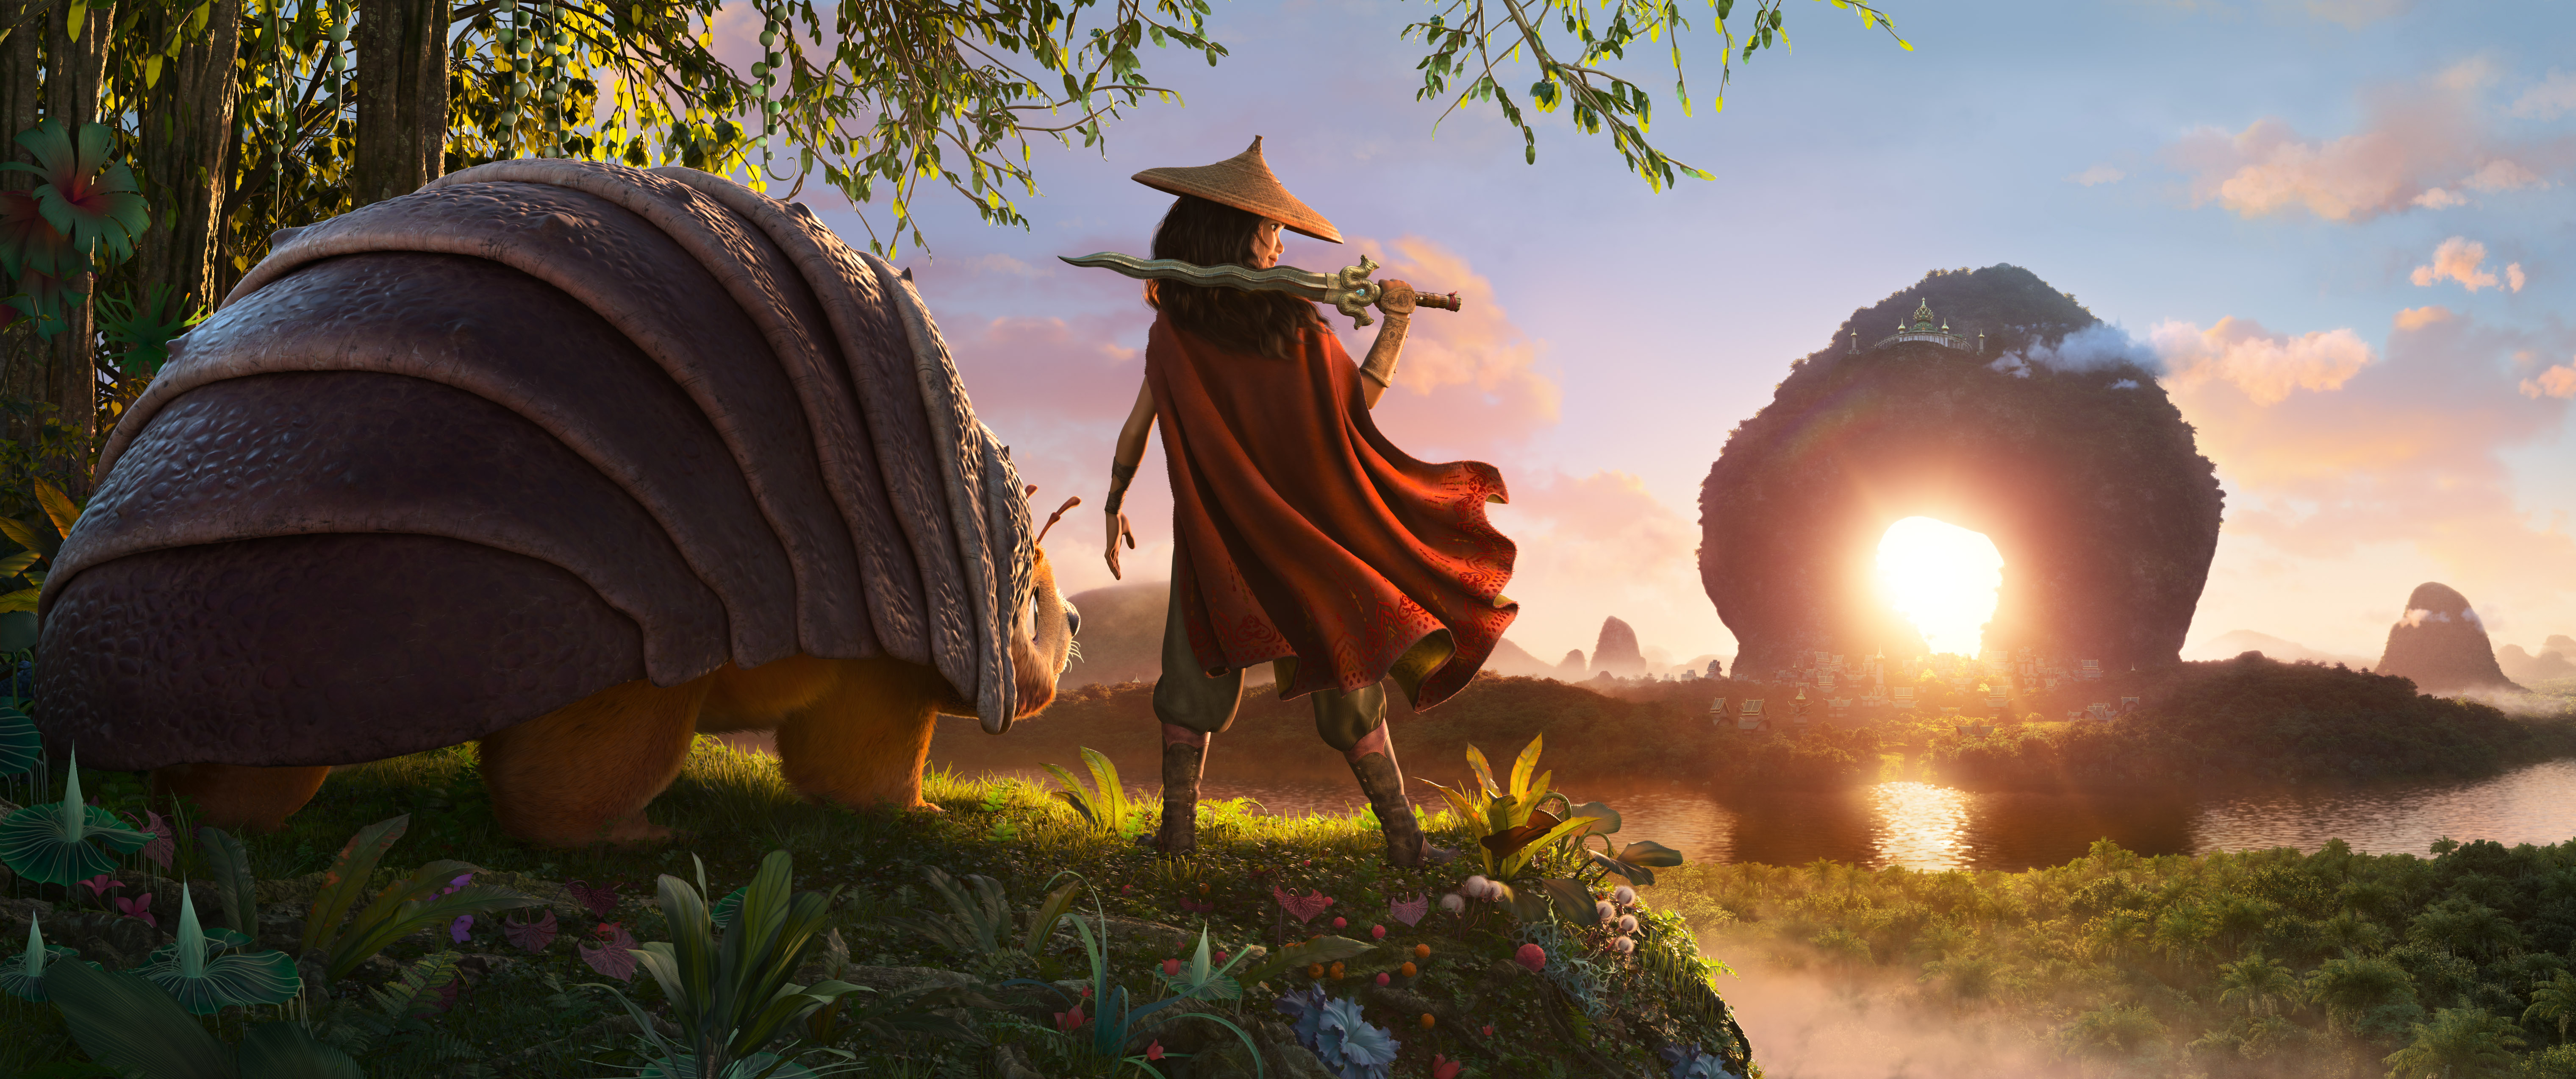 «Raya og den siste dragen» er Disneys beste film på mange år. Nå har den premiere på kino og Disney+.